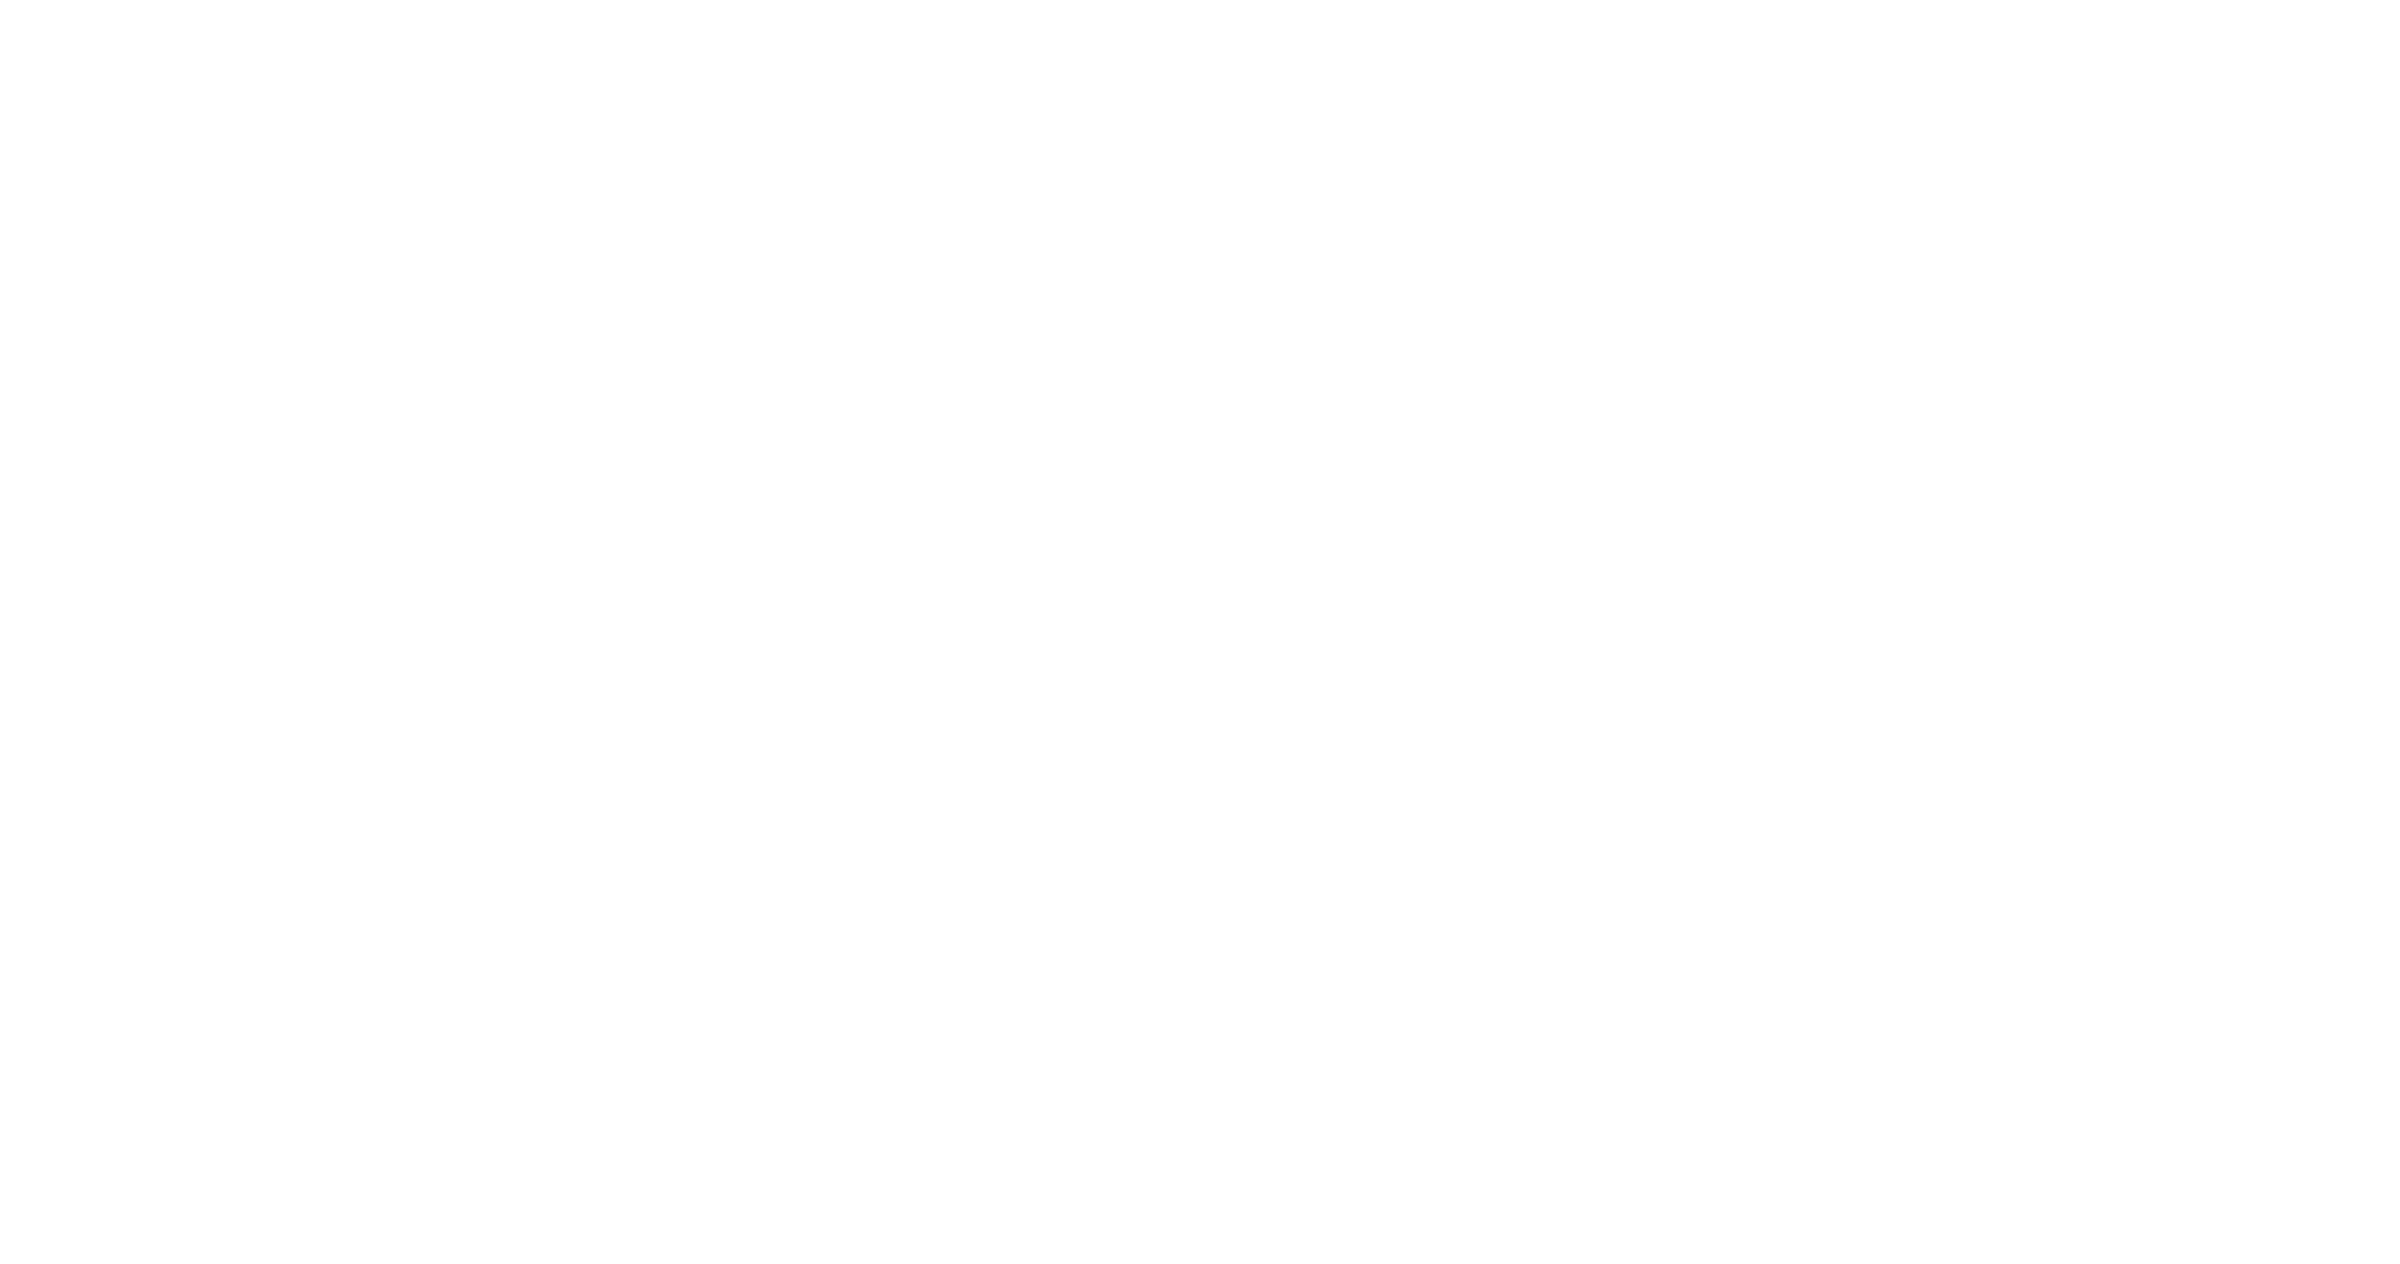 Nordstrom Rack Logo - Nordstrom Rack Logo PNG Transparent & SVG Vector